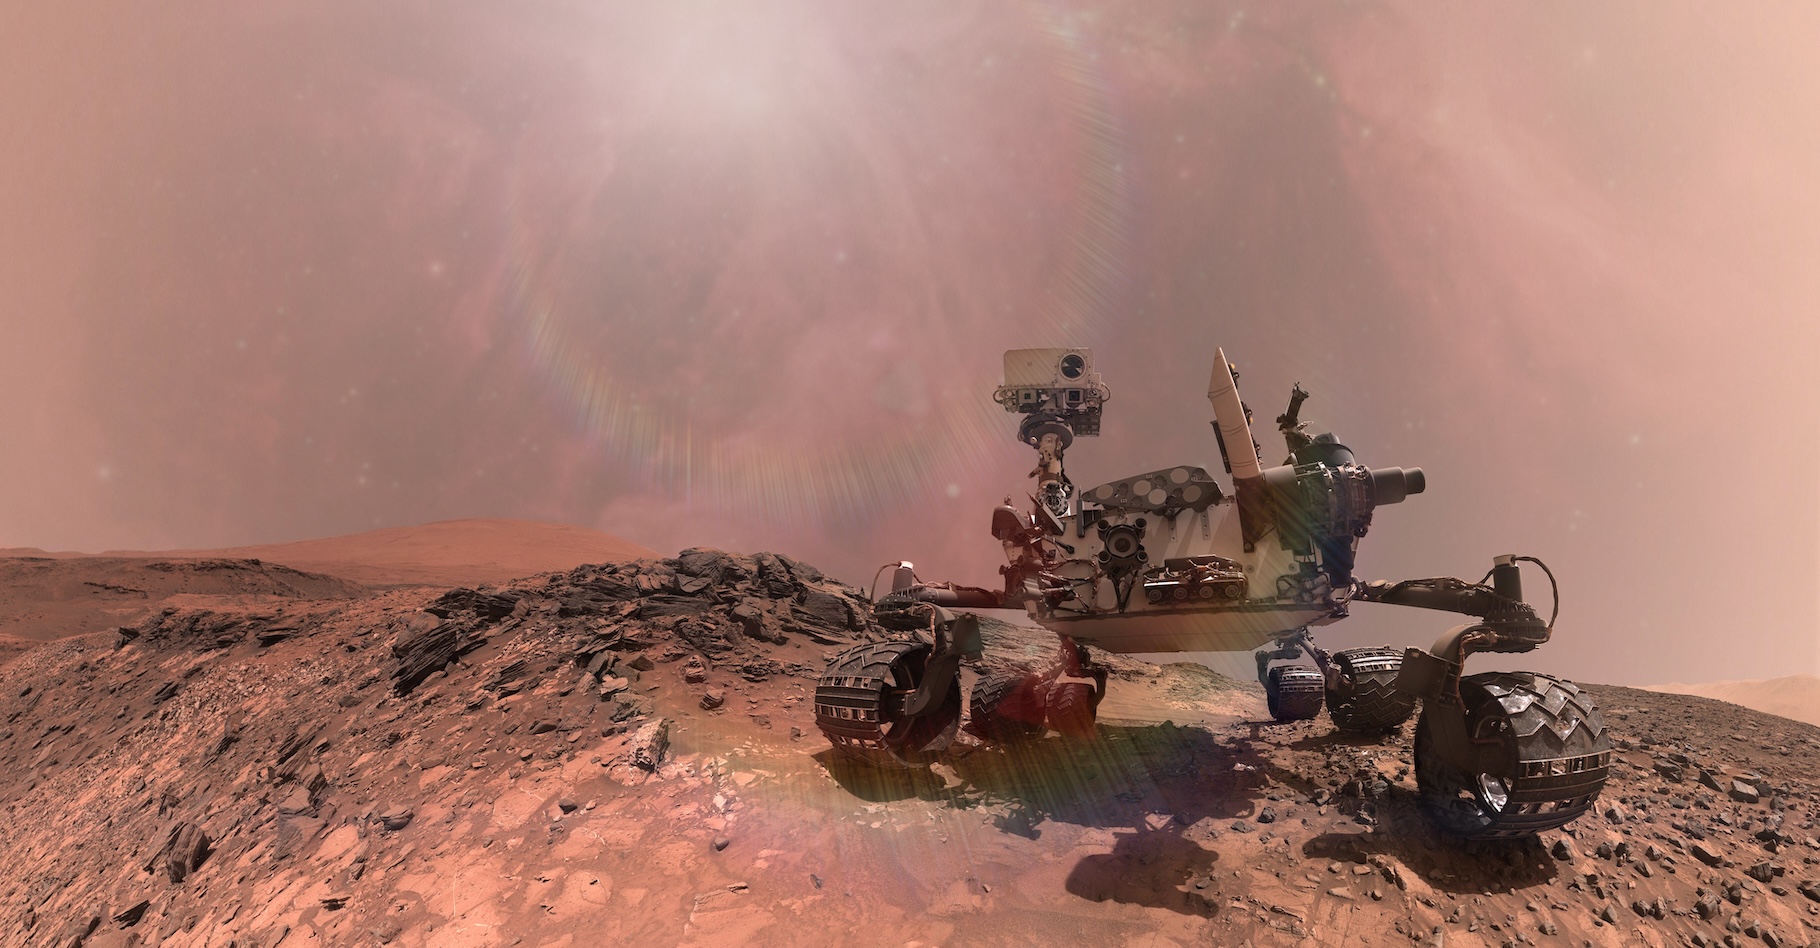 Le rover Curiosity a renvoyé des images qui permettent de se faire une idée de ce à quoi ressemble une journée sur Mars. © Paopano, Adobe Stock